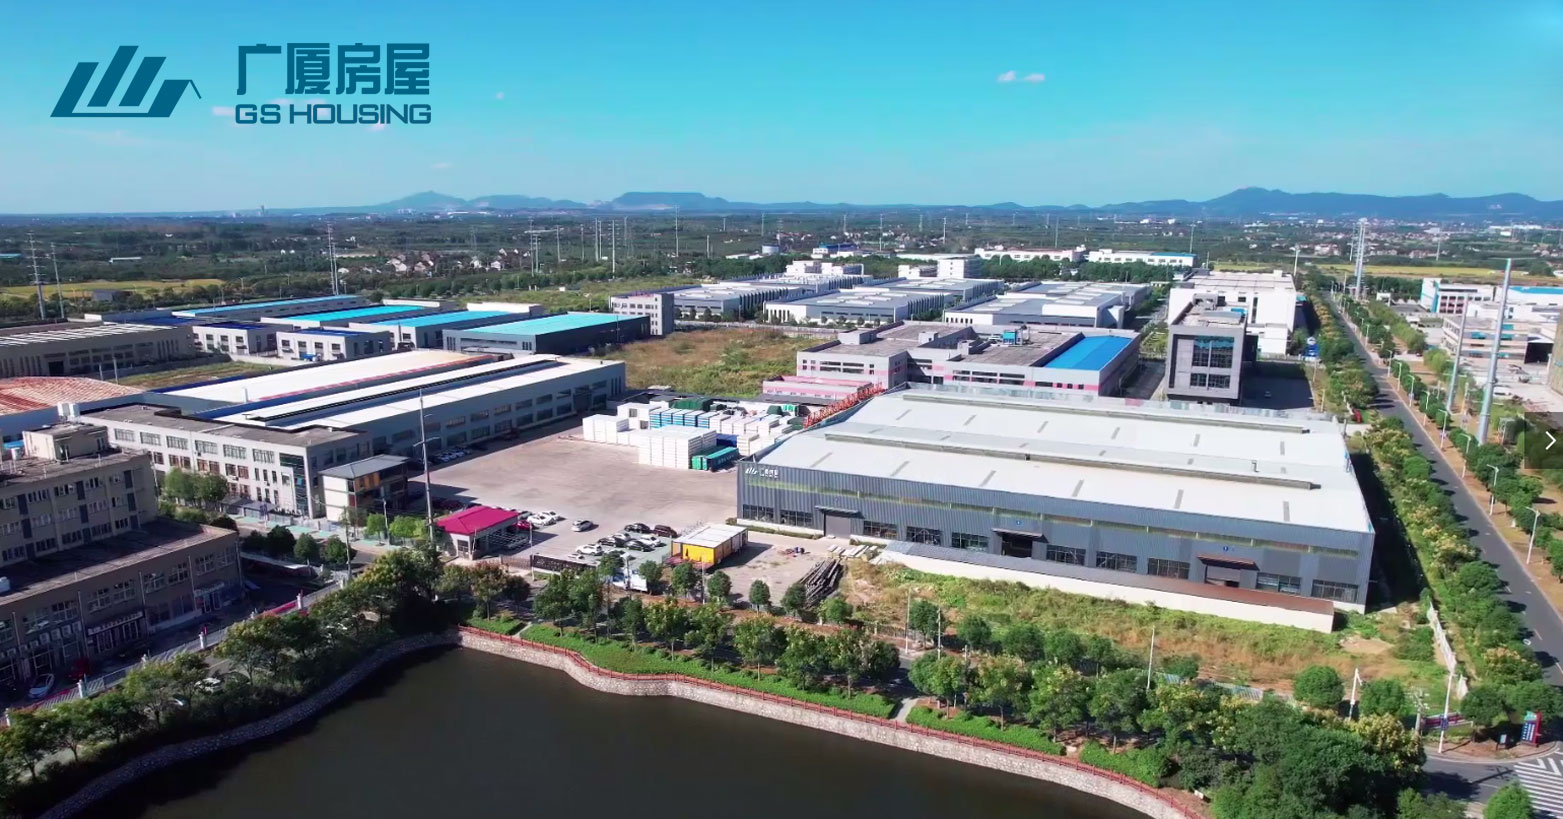 GS आवास - Jiangsu उत्पादन आधार (Shanghai, Ningbo बन्दरगाह नजिकै)